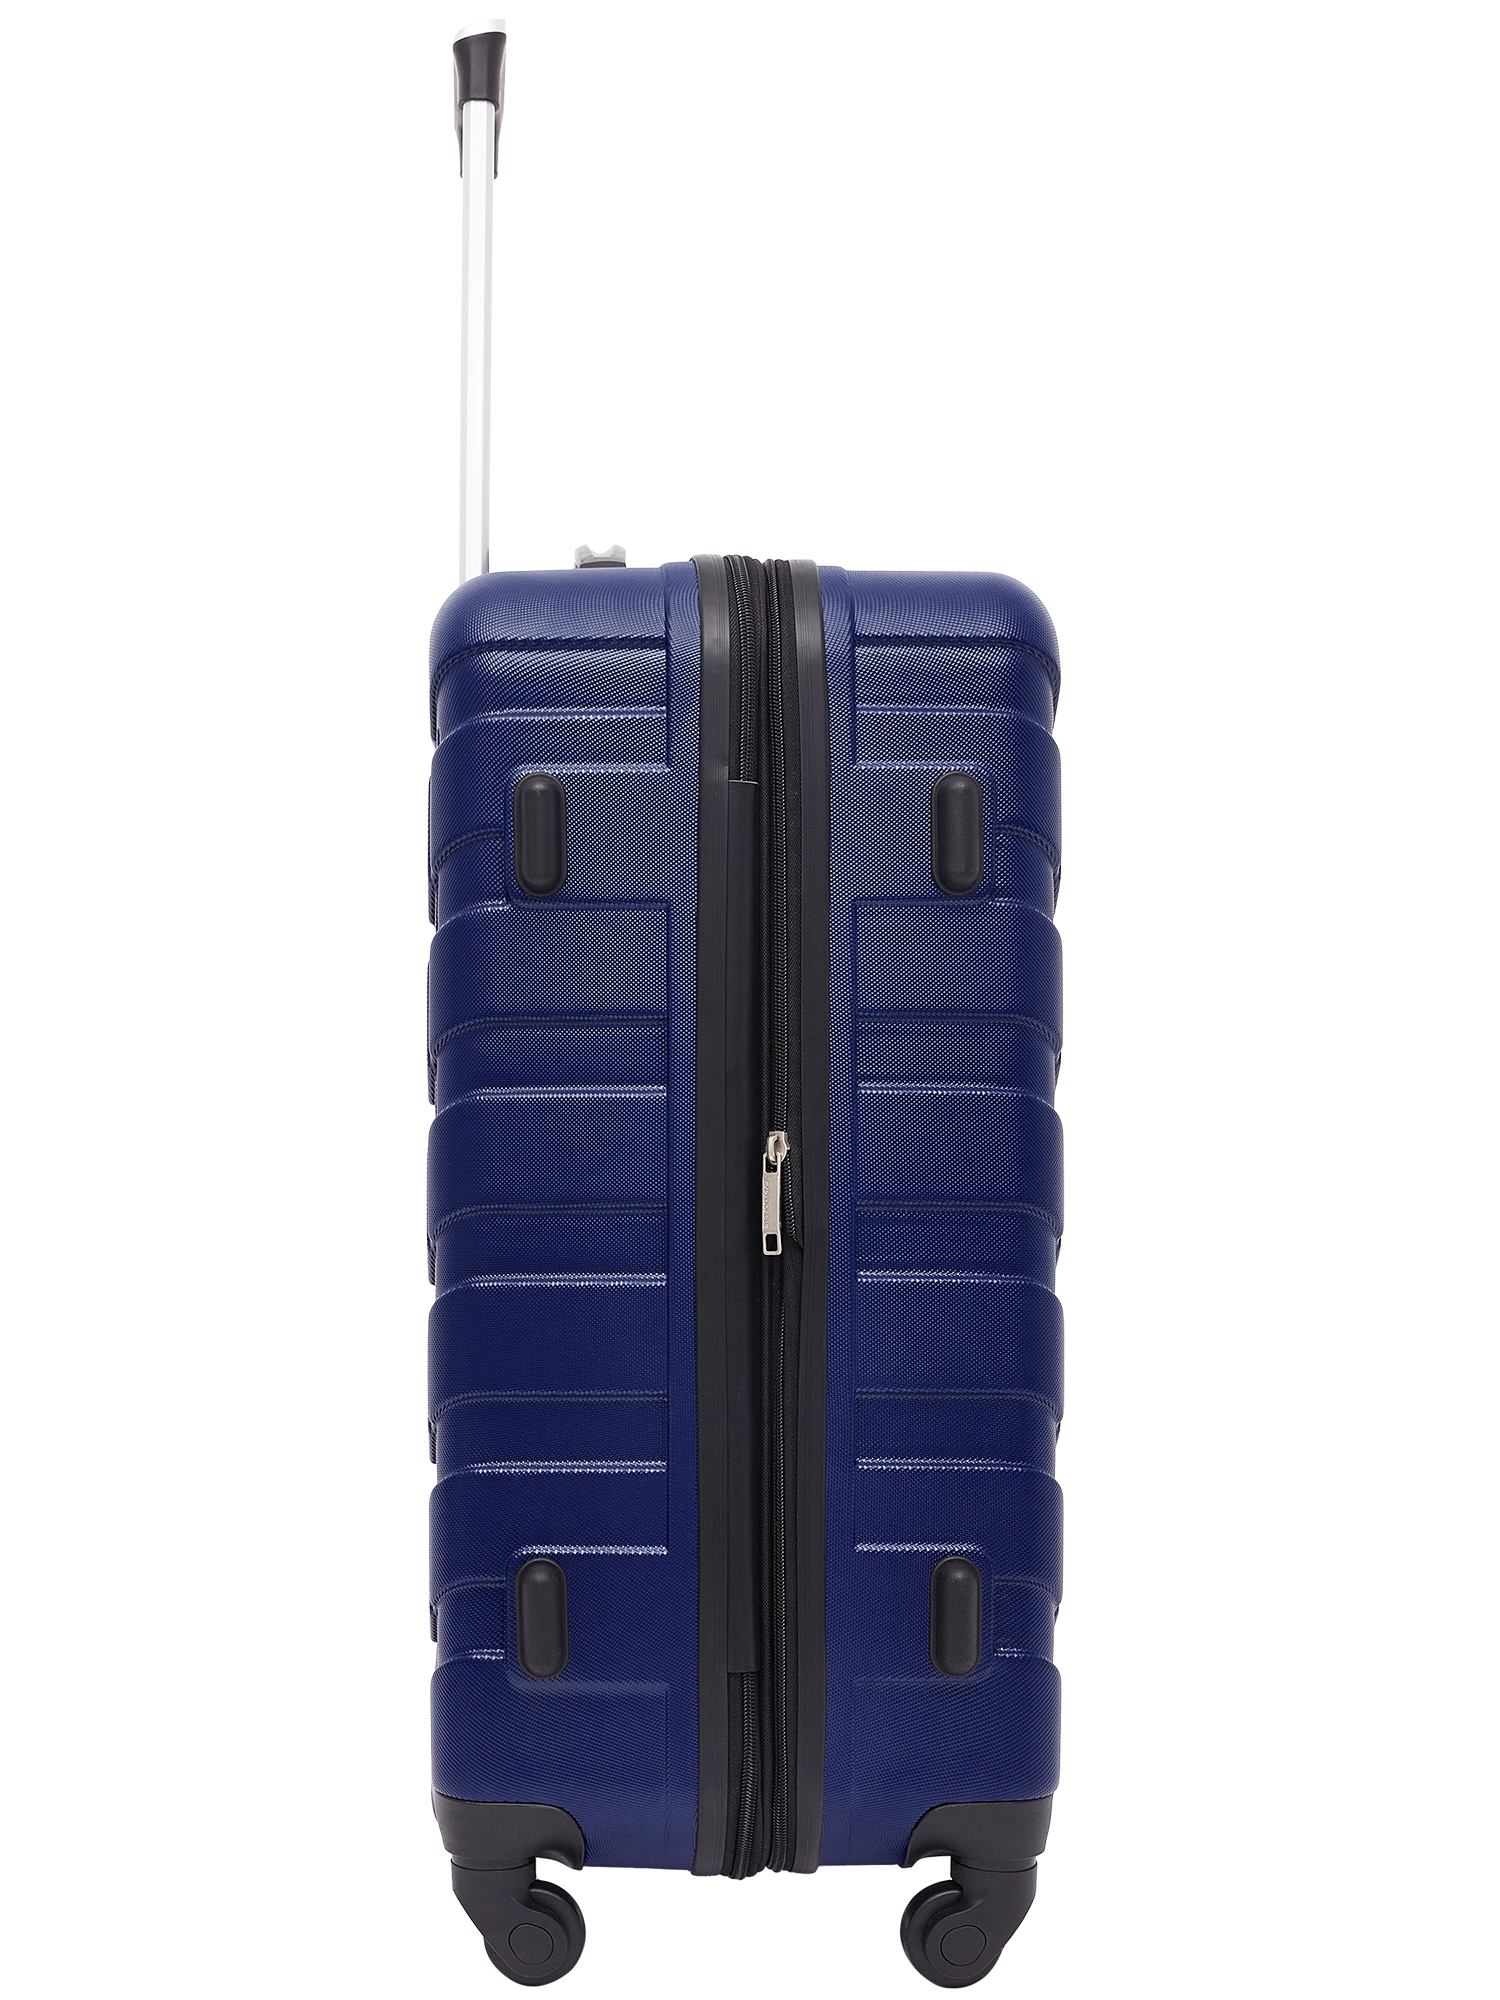 Wrangler 4 Piece Rolling Hardside Luggage Set, Blue - image 5 of 9